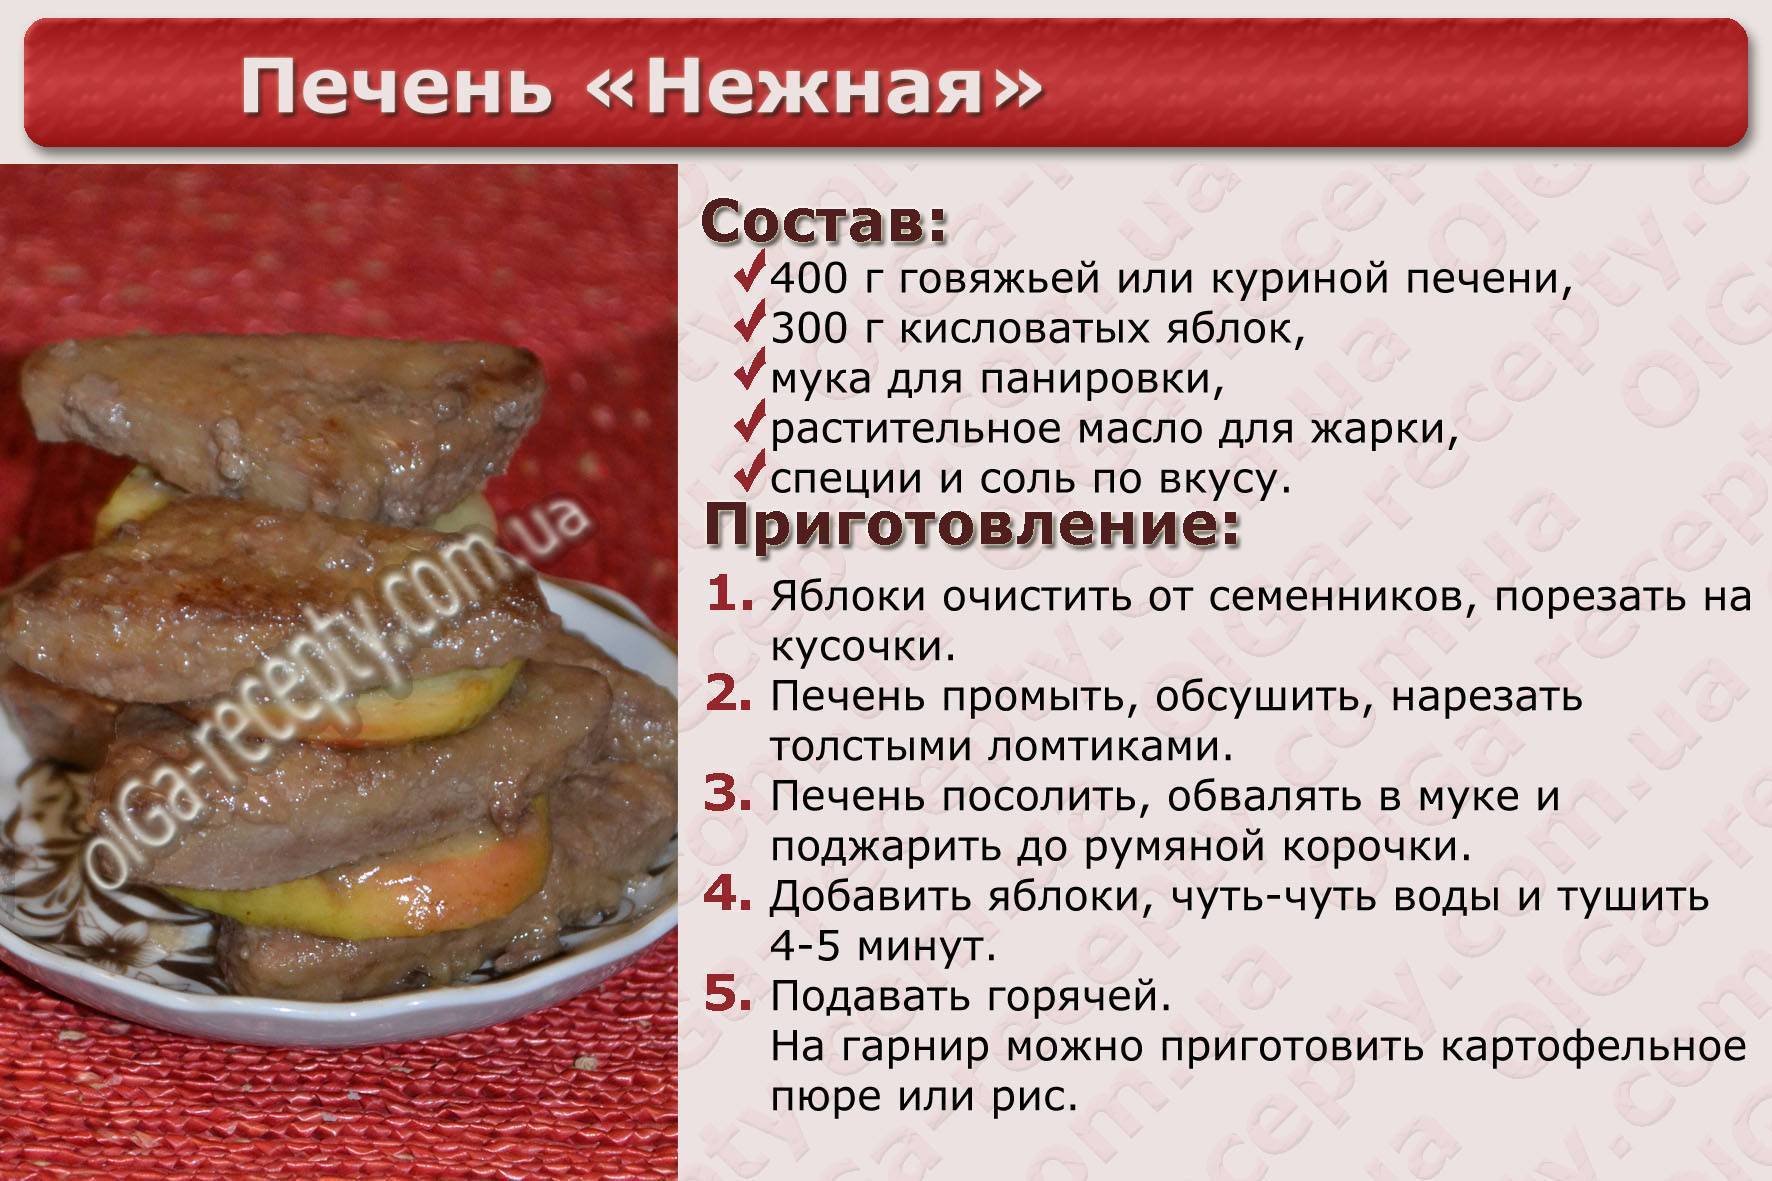 Сколько по времени готовится печень говяжья. Рецепты блюд в картинках с описанием. Рецепты в картинках печенка. Говяжья печень рецептура. Рецепты в картинках с описанием.